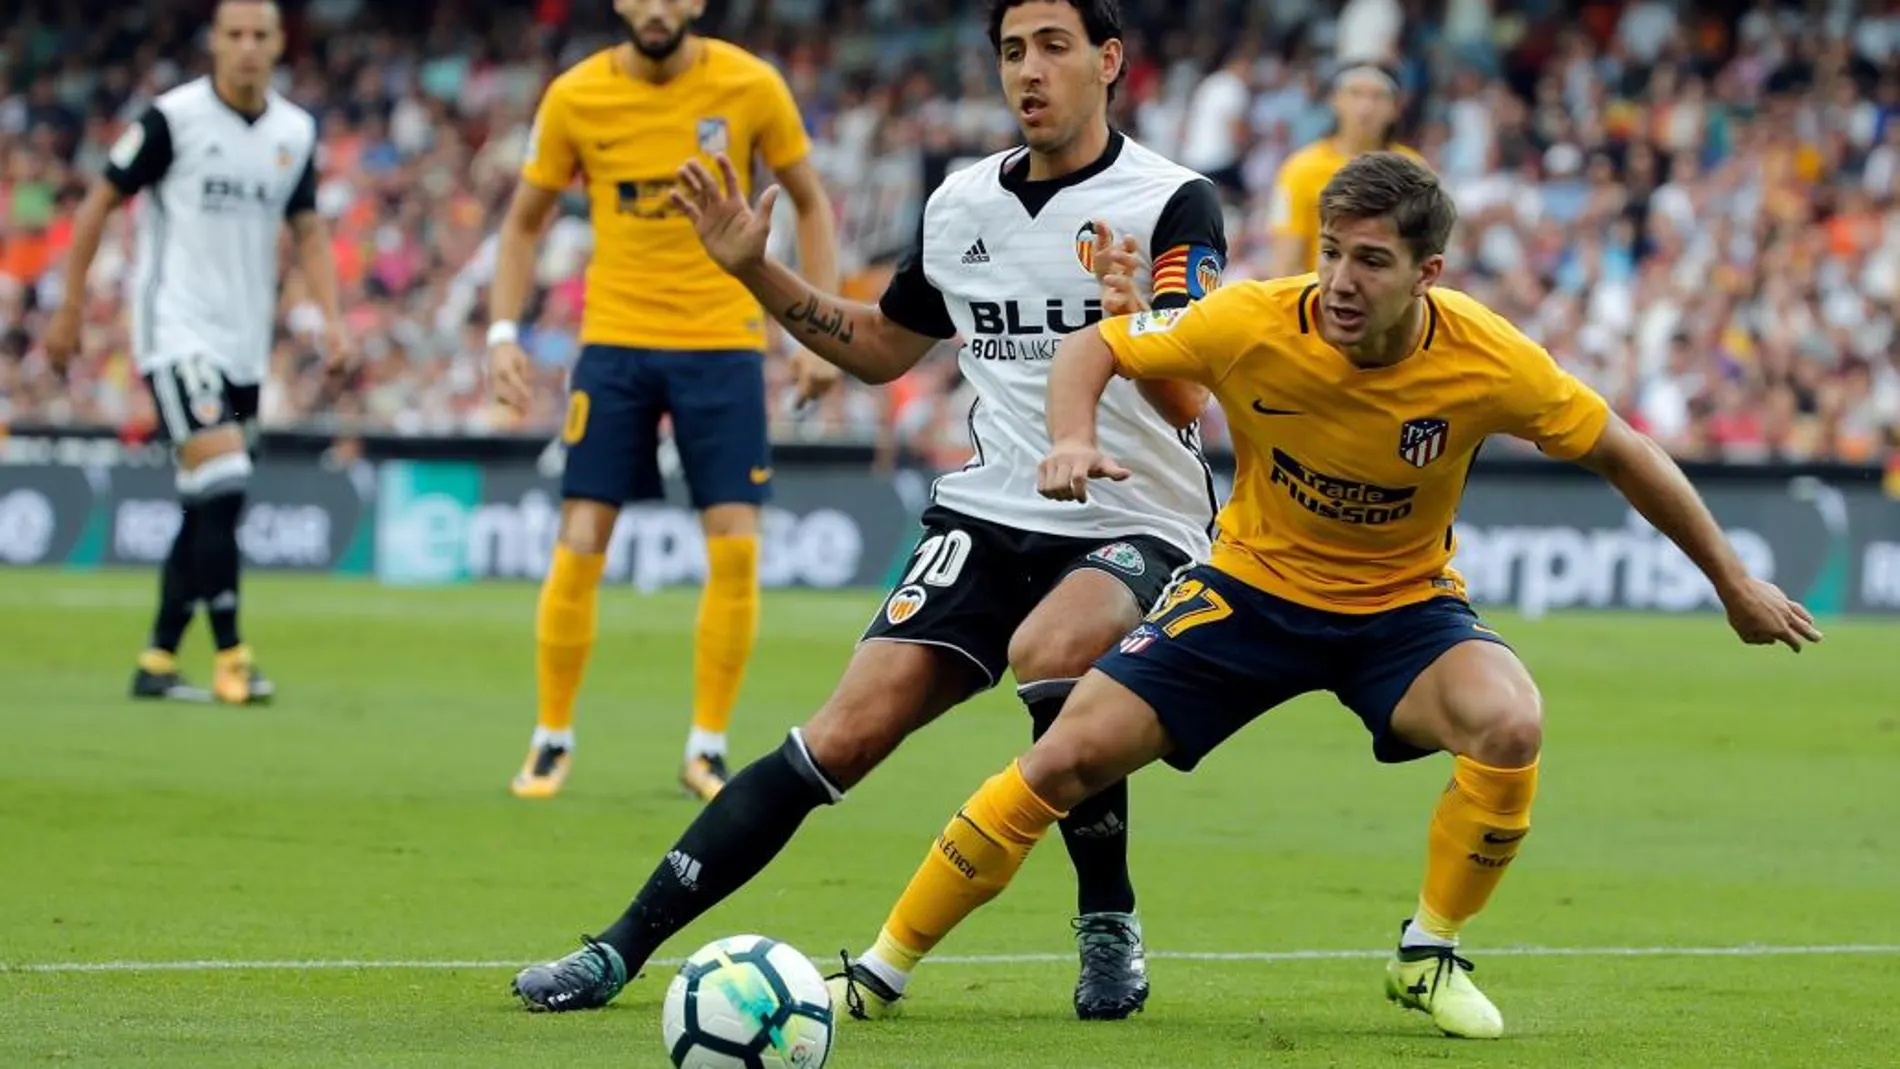 El centrocampista del Valencia Dani Parejo disputa un balón con el jugador argentino del Atlético de Madrid Luciano Vietto